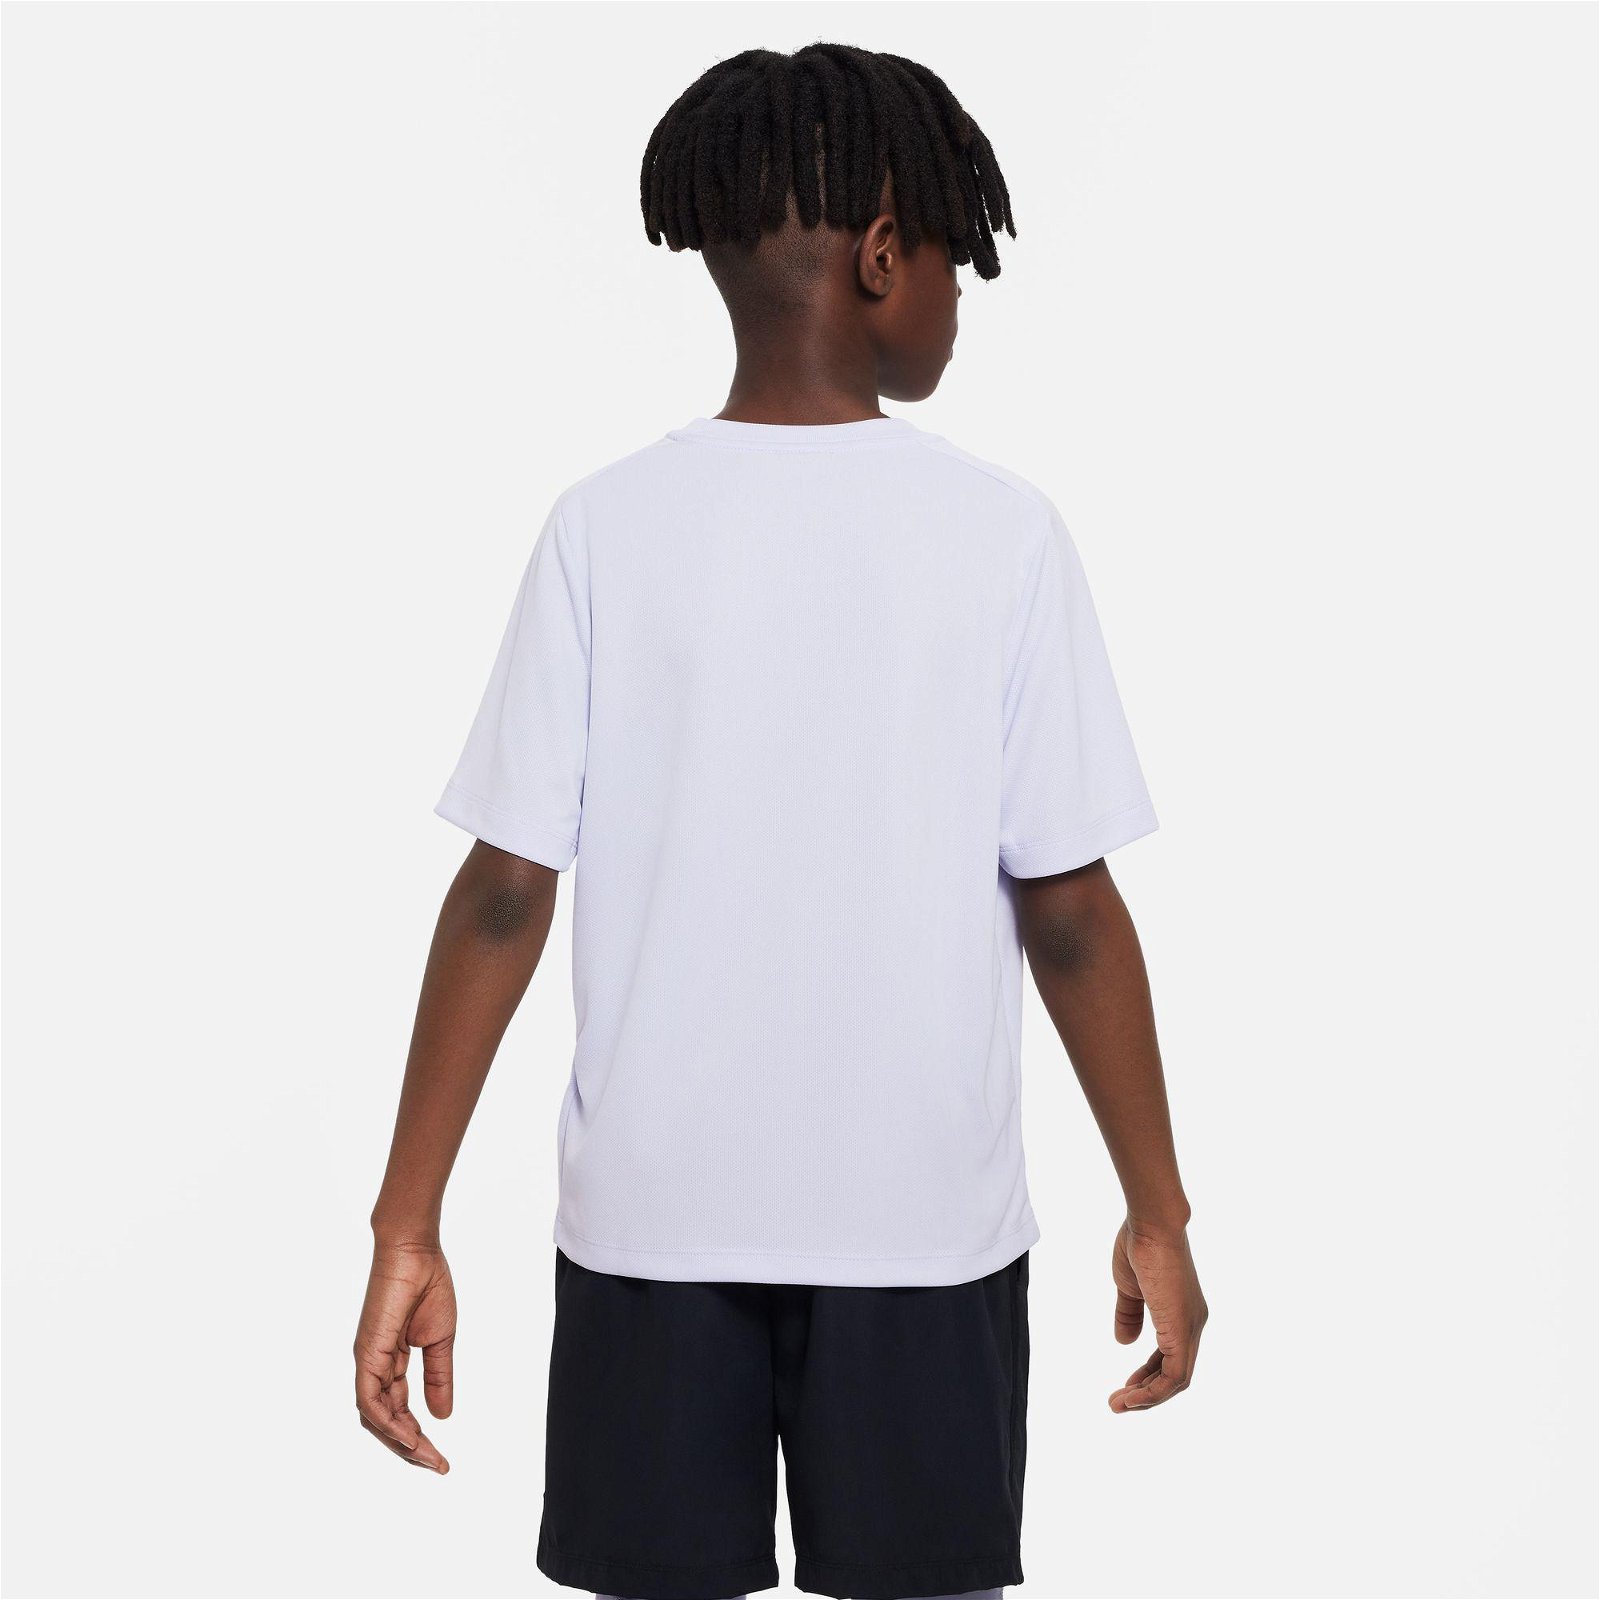 Nike Dri-Fit Multi+ Top Hbr Çocuk Mor T-Shirt